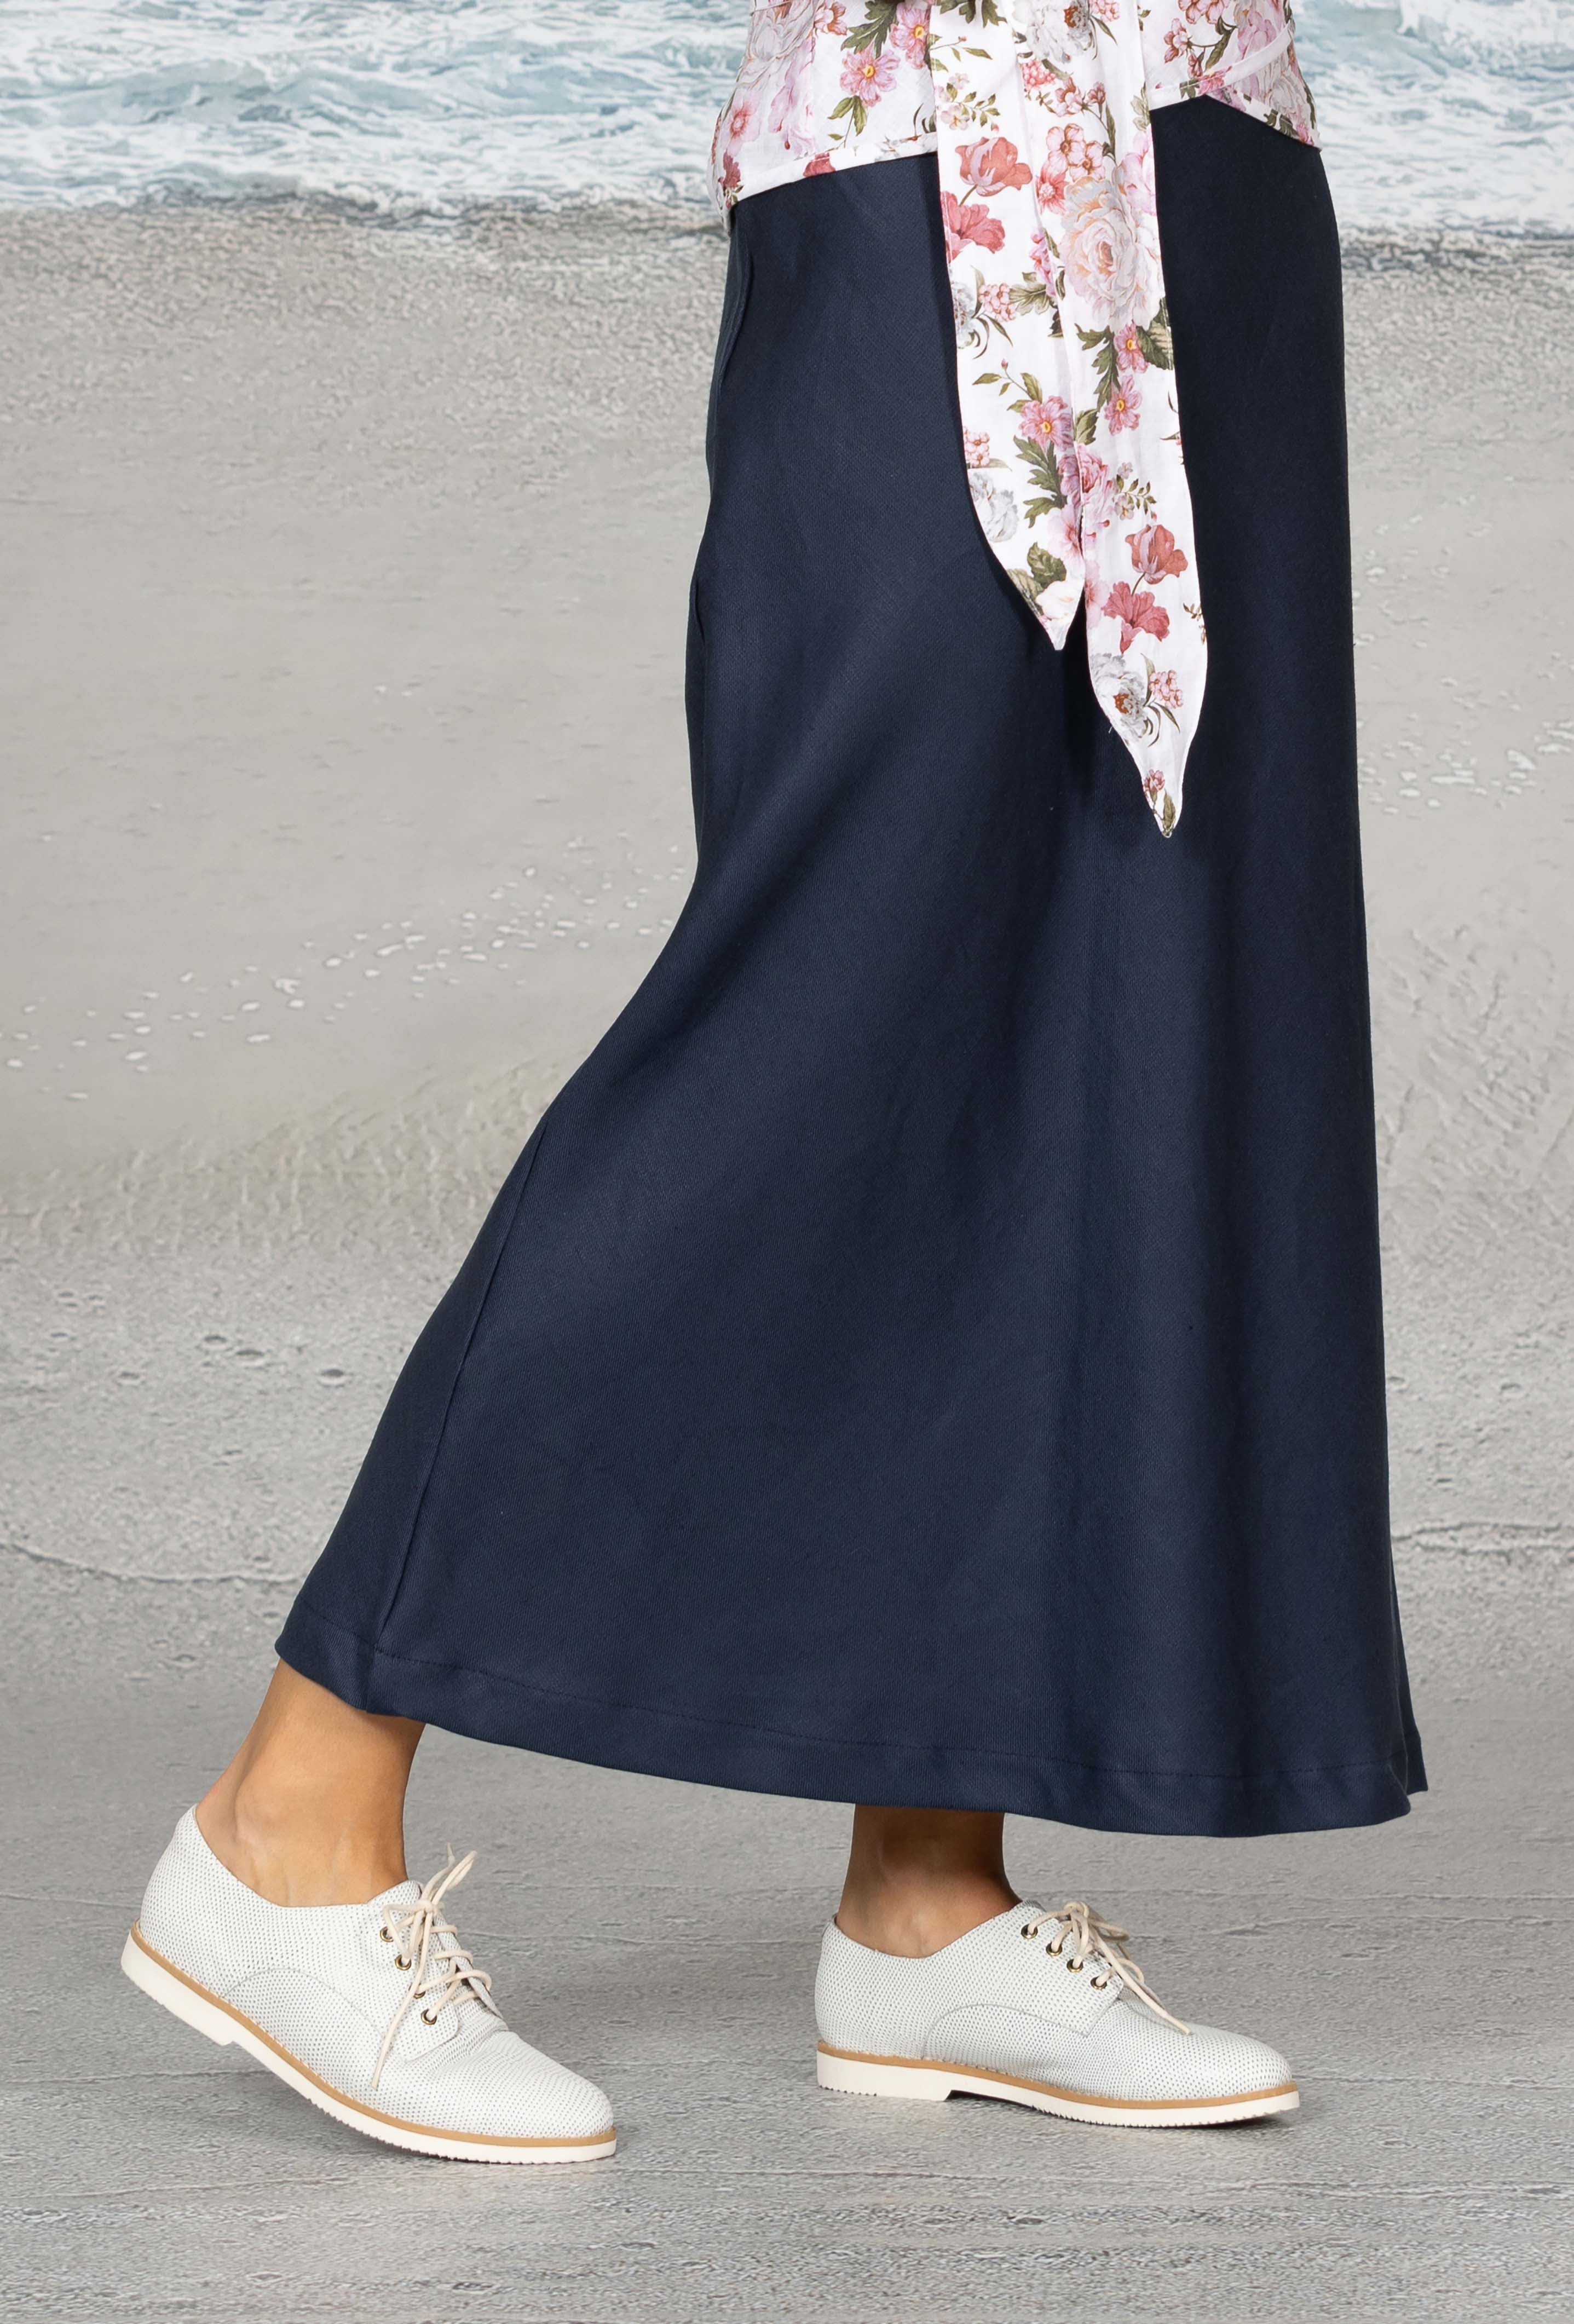 Summer Weight Linen Twill Skirt - Noble Wilde